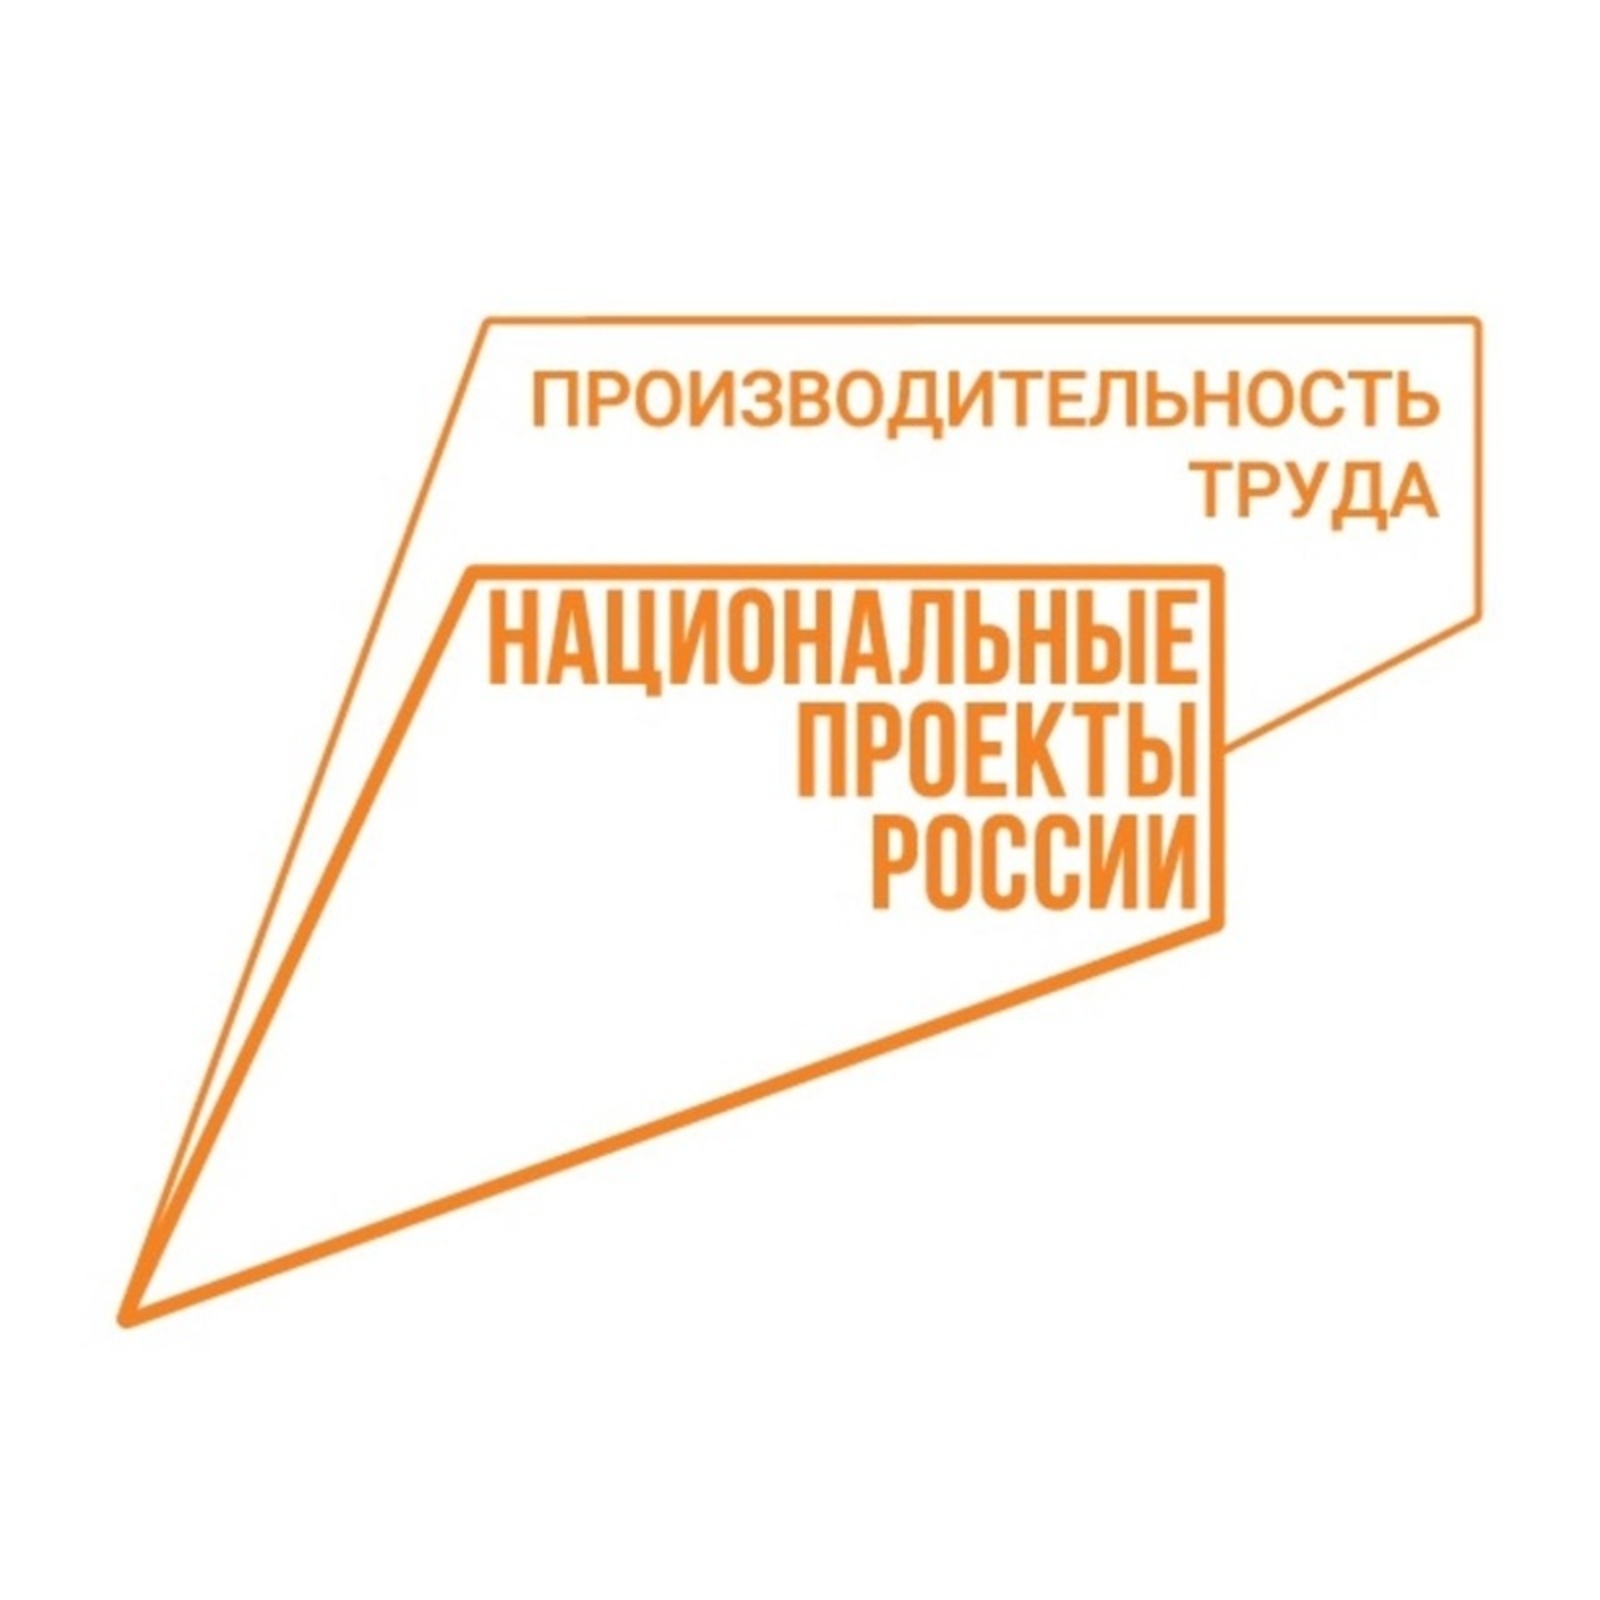 В 2022 году 140 предприятий Башкортостана станут участниками нацпроекта «Производительность труда»